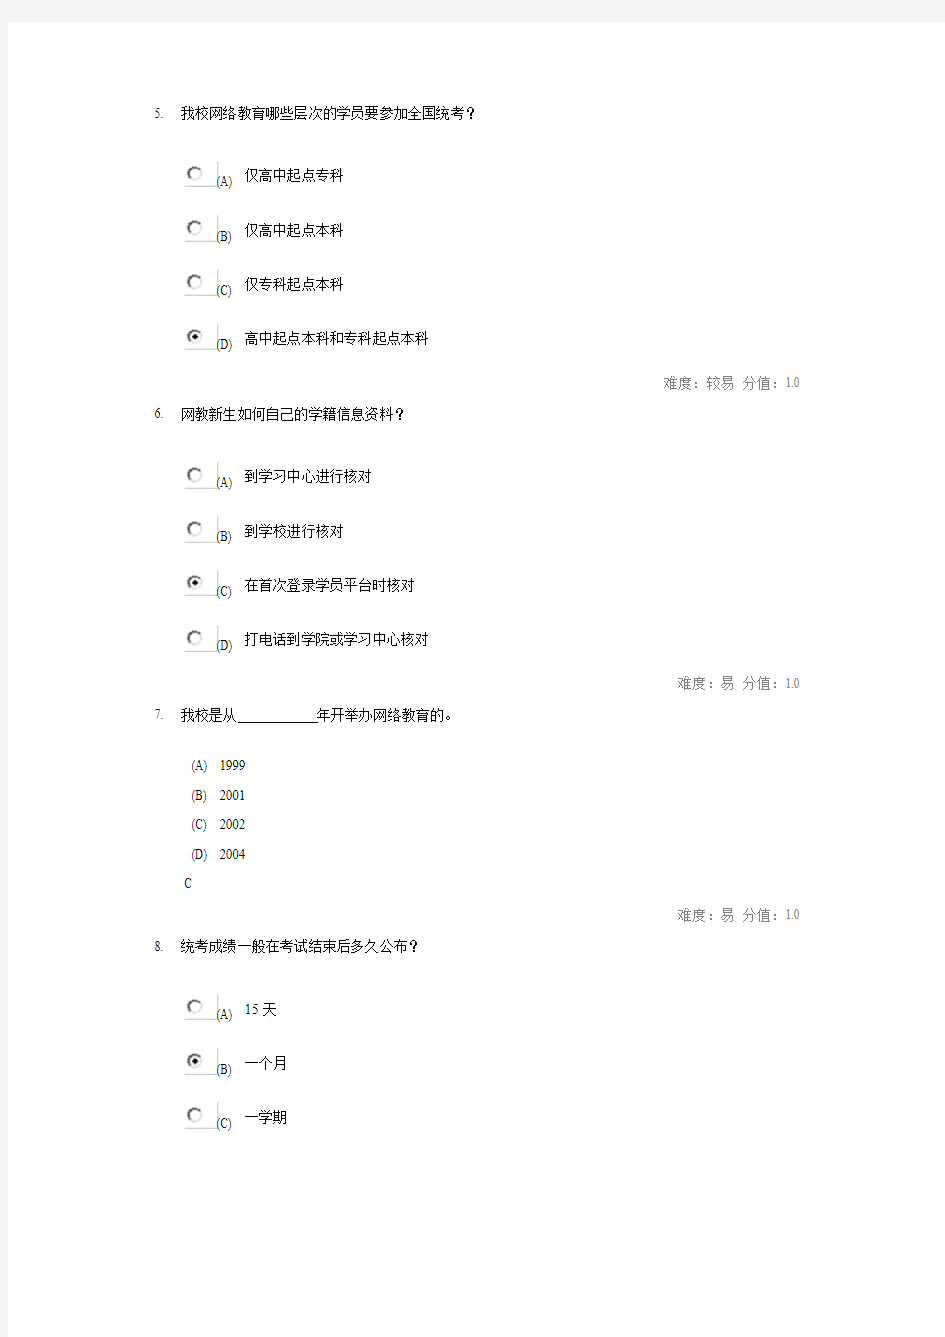 四川农业大学网络导航期末考试试卷,完整版